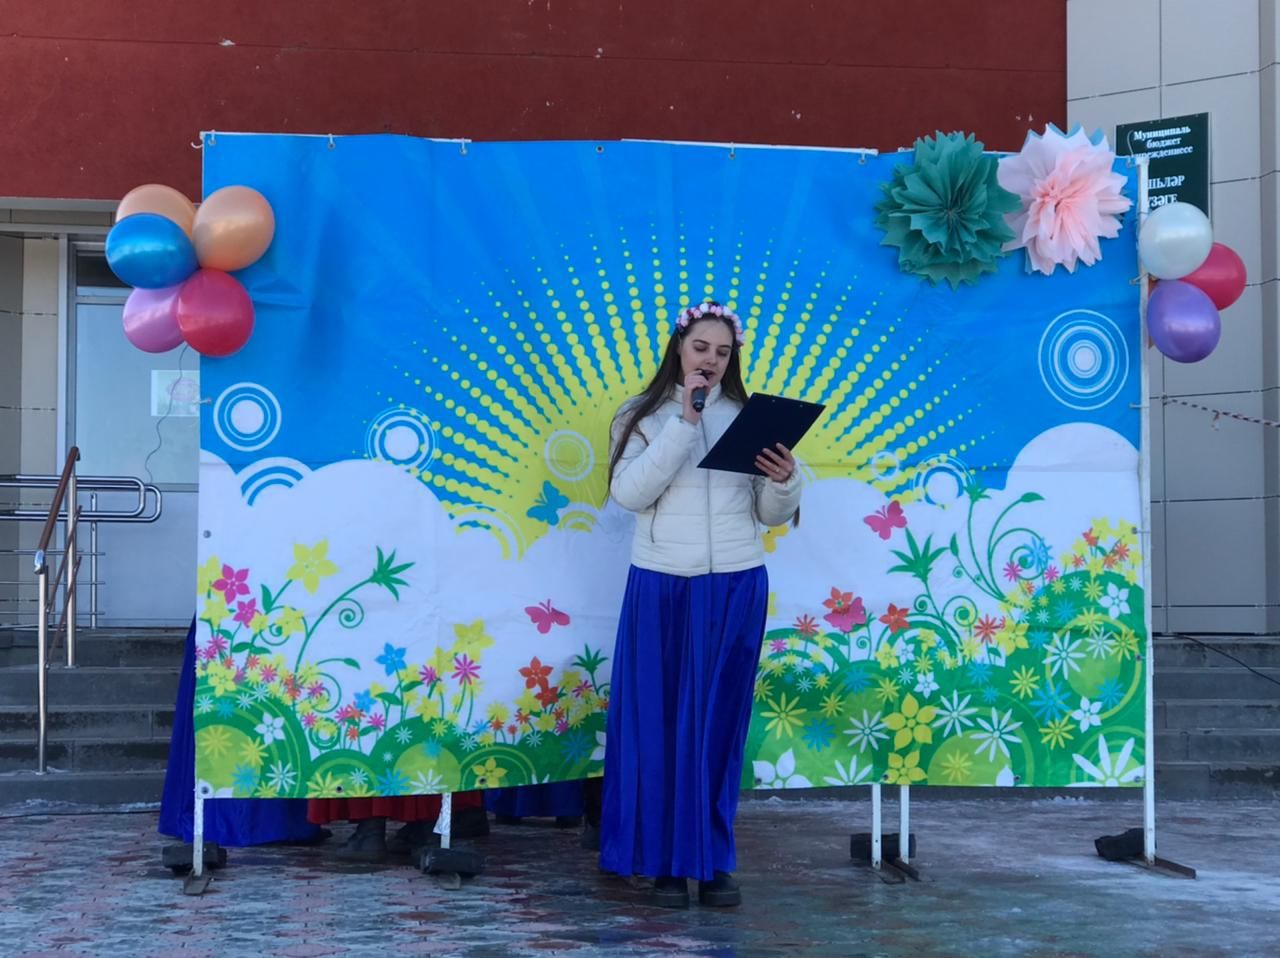 Сегодня в селе Ленино-Кокушкино на площади Молодёжного центра прошёл весенний праздник Навруз